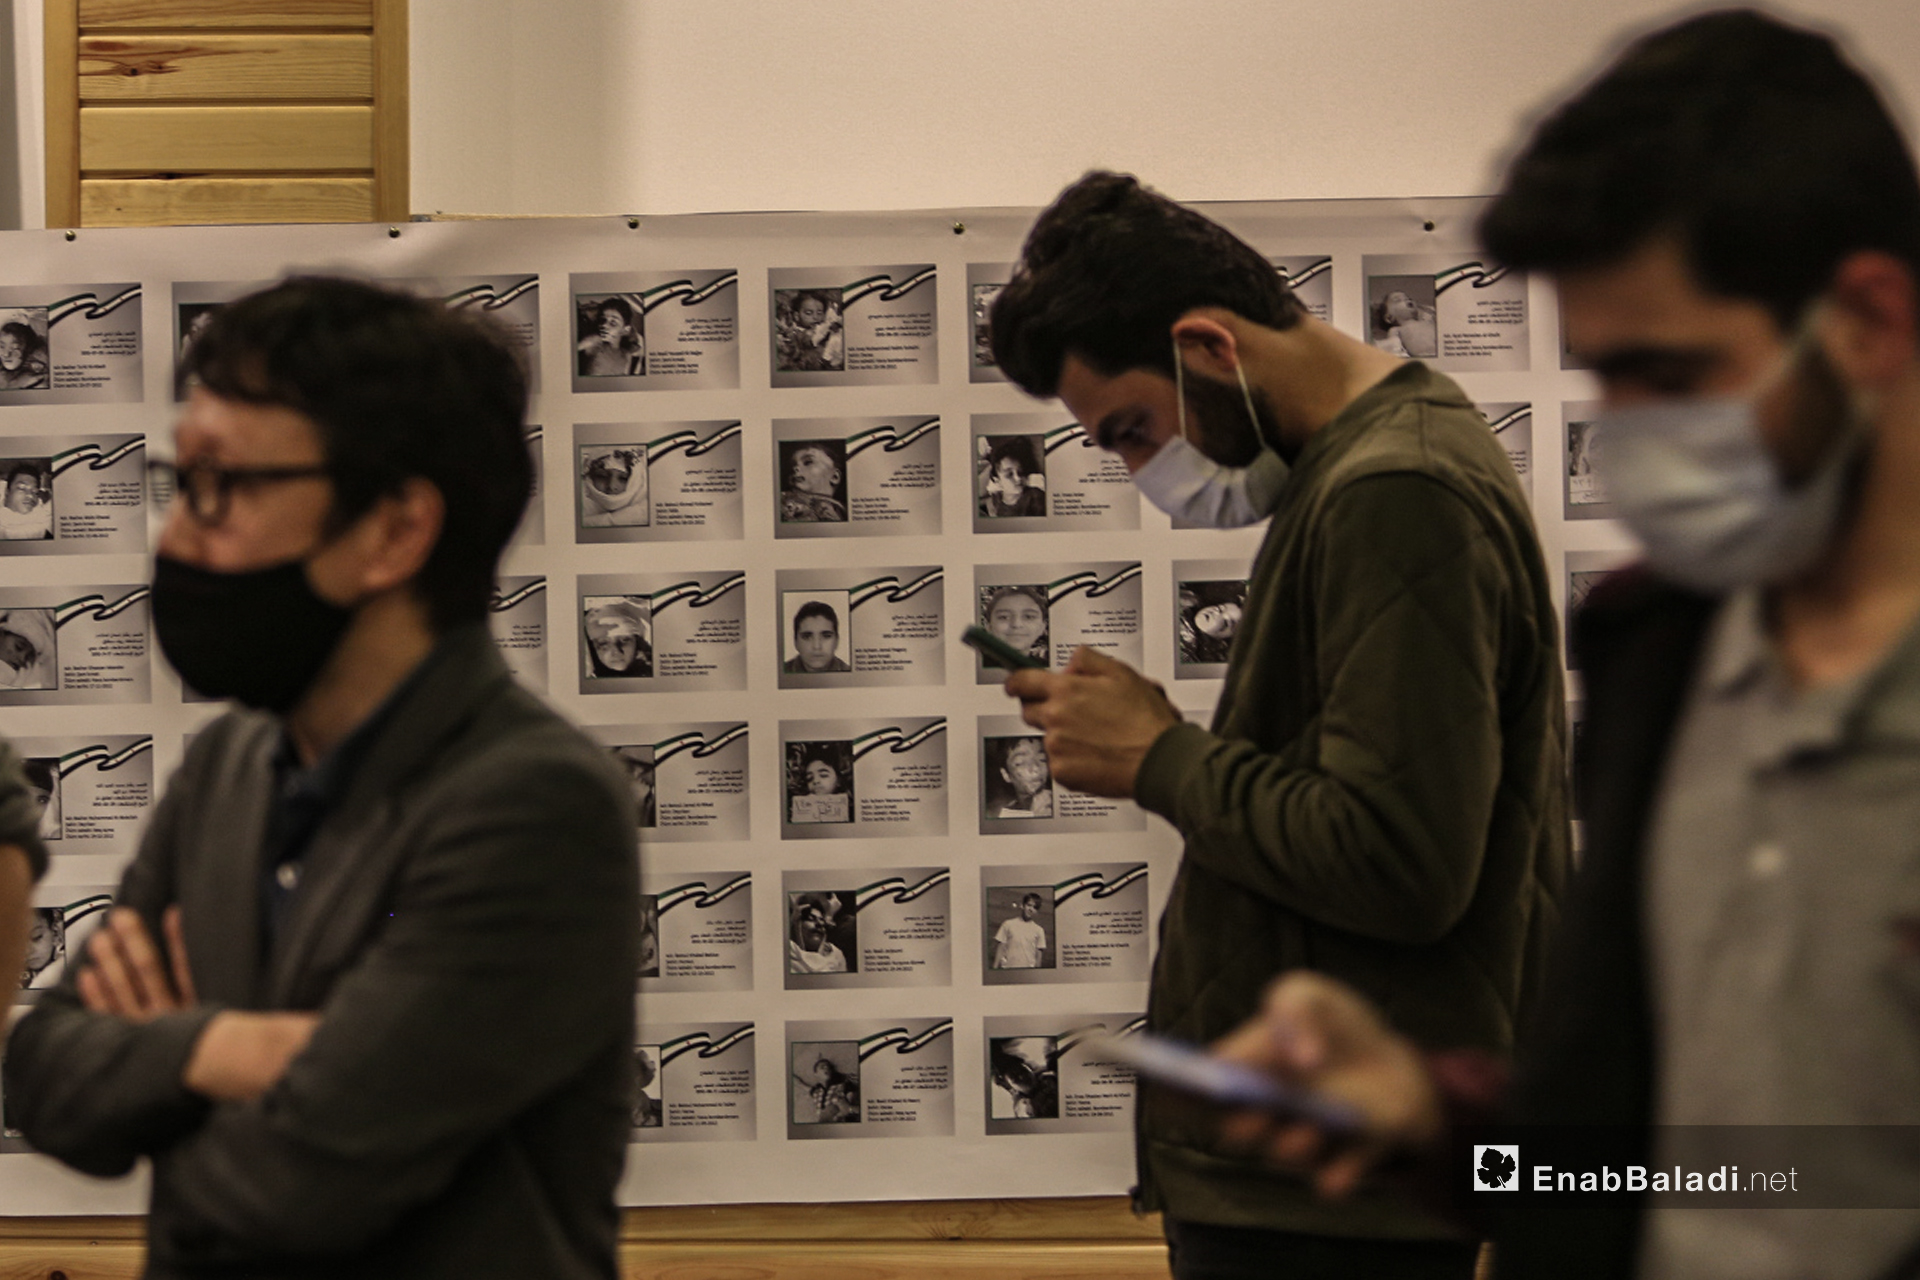 ناشطين في معرض "سُكّان الذاكرة" الذي يوثق بالصور و الاسماء و التواريخ 4600 طفل سوري على لوحة طولها 70 متر في اسطنبول - 13 تشرين أول (عنب بلدي/ عبد المعين حمص)